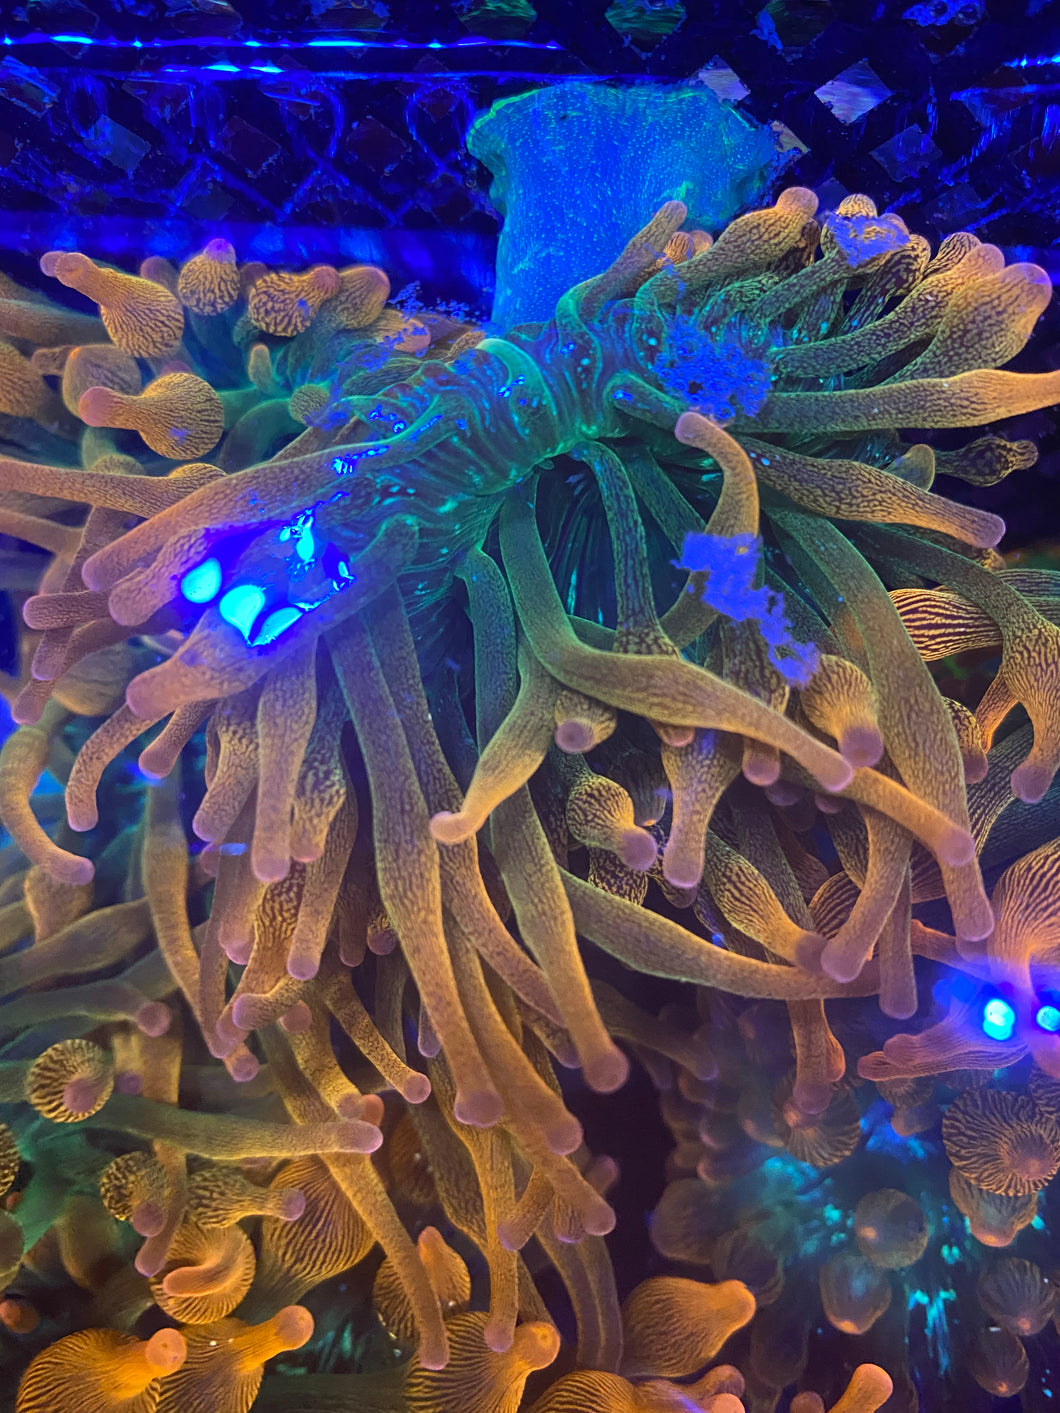 Mother rainbow anemone